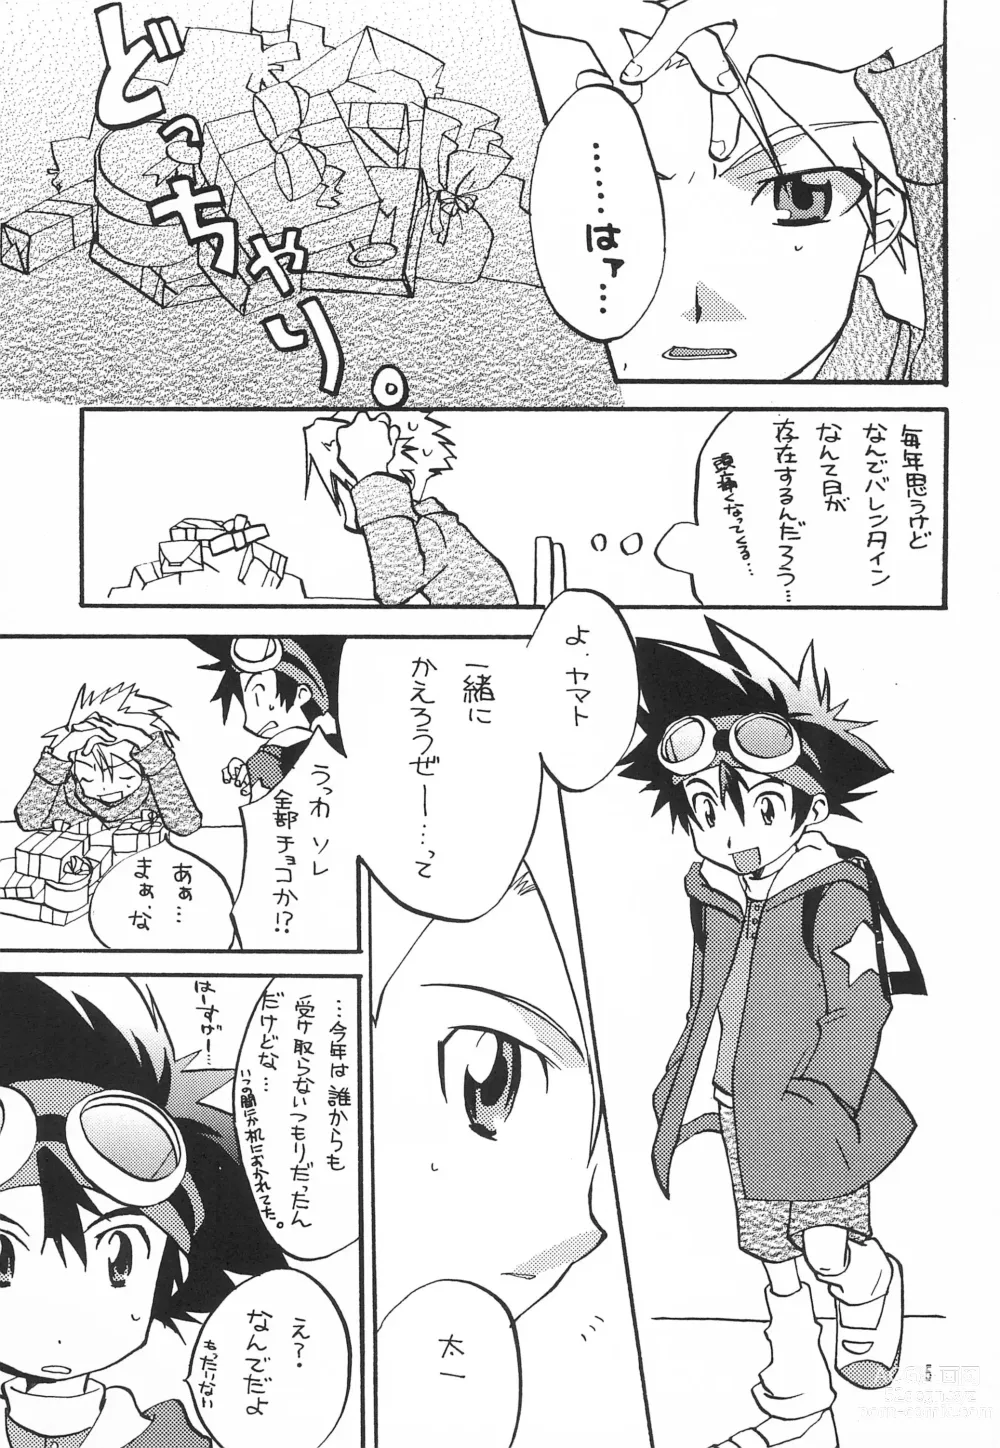 Page 7 of doujinshi Utsukushiki Samazama no Yume